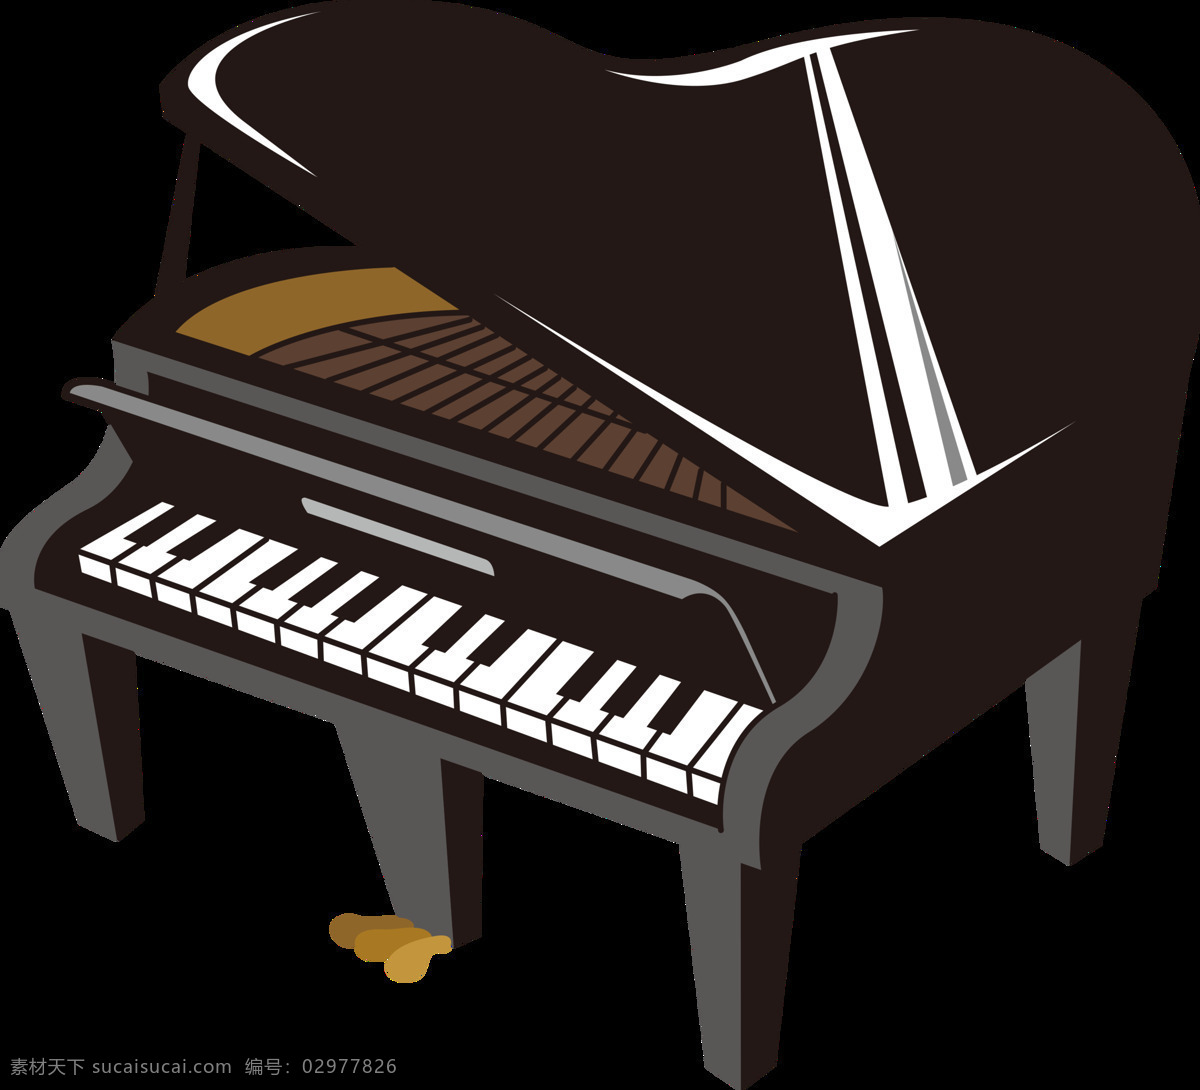 黑色 卡通 钢琴 元素 儿童弹钢琴 钢琴海报 钢琴培训 钢琴学习 钢琴音乐会 钢琴招生海报 卡通钢琴 少儿钢琴 学习钢琴 音乐元素